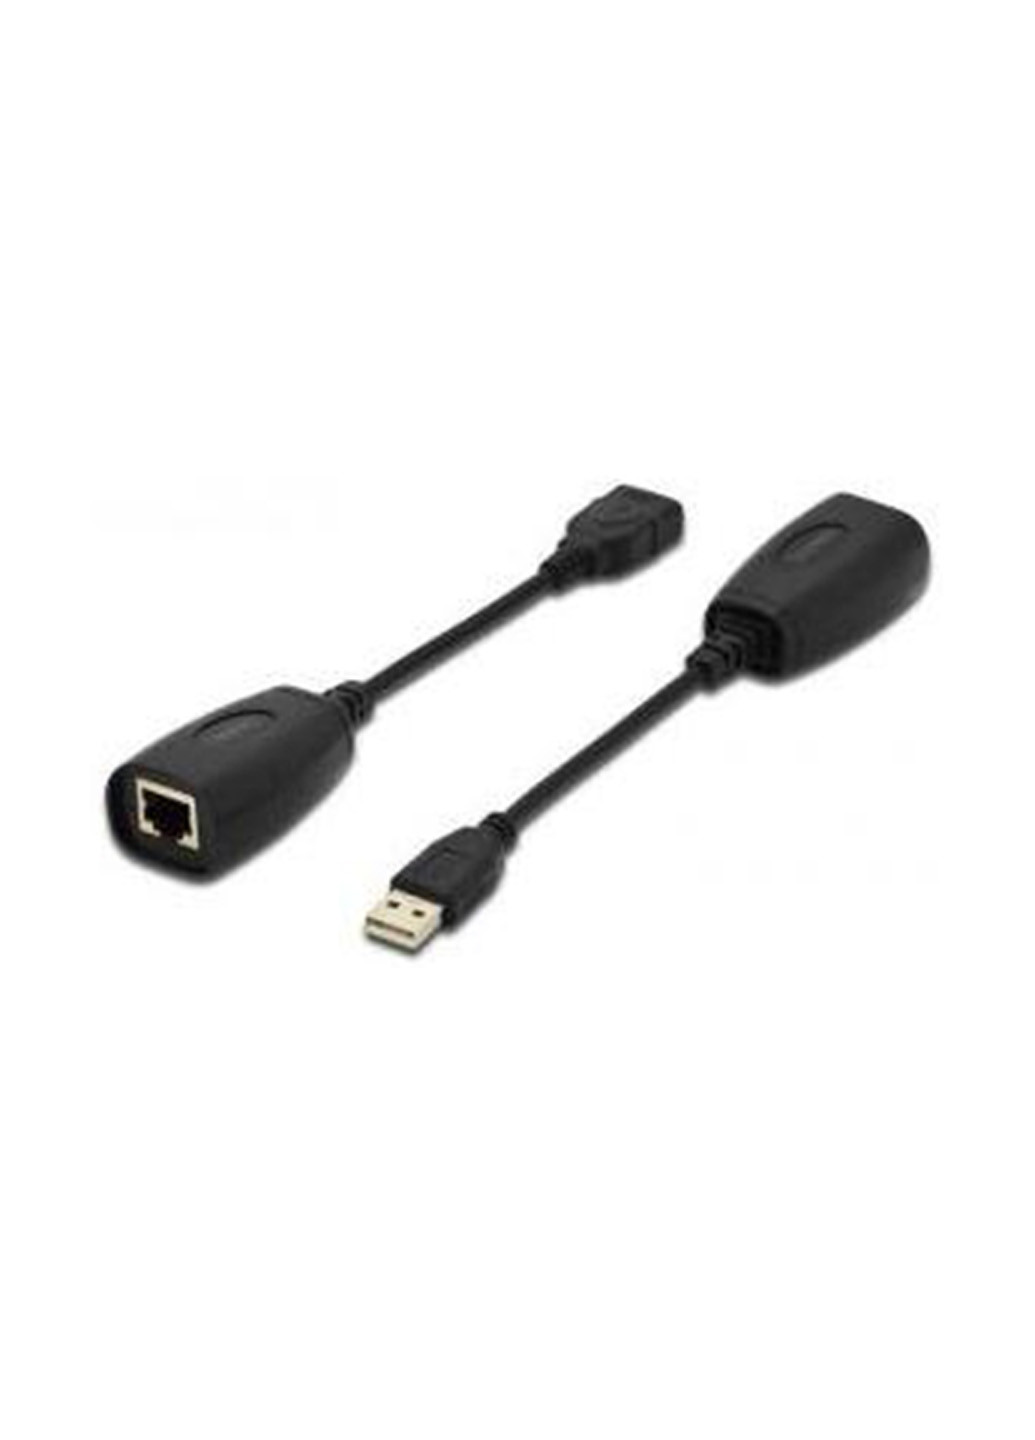 Удленнитель USB - UTP Cat5, black (DA-70139-2) Digitus удленнитель usb - utp cat5, black (da-70139-2) (136464021)